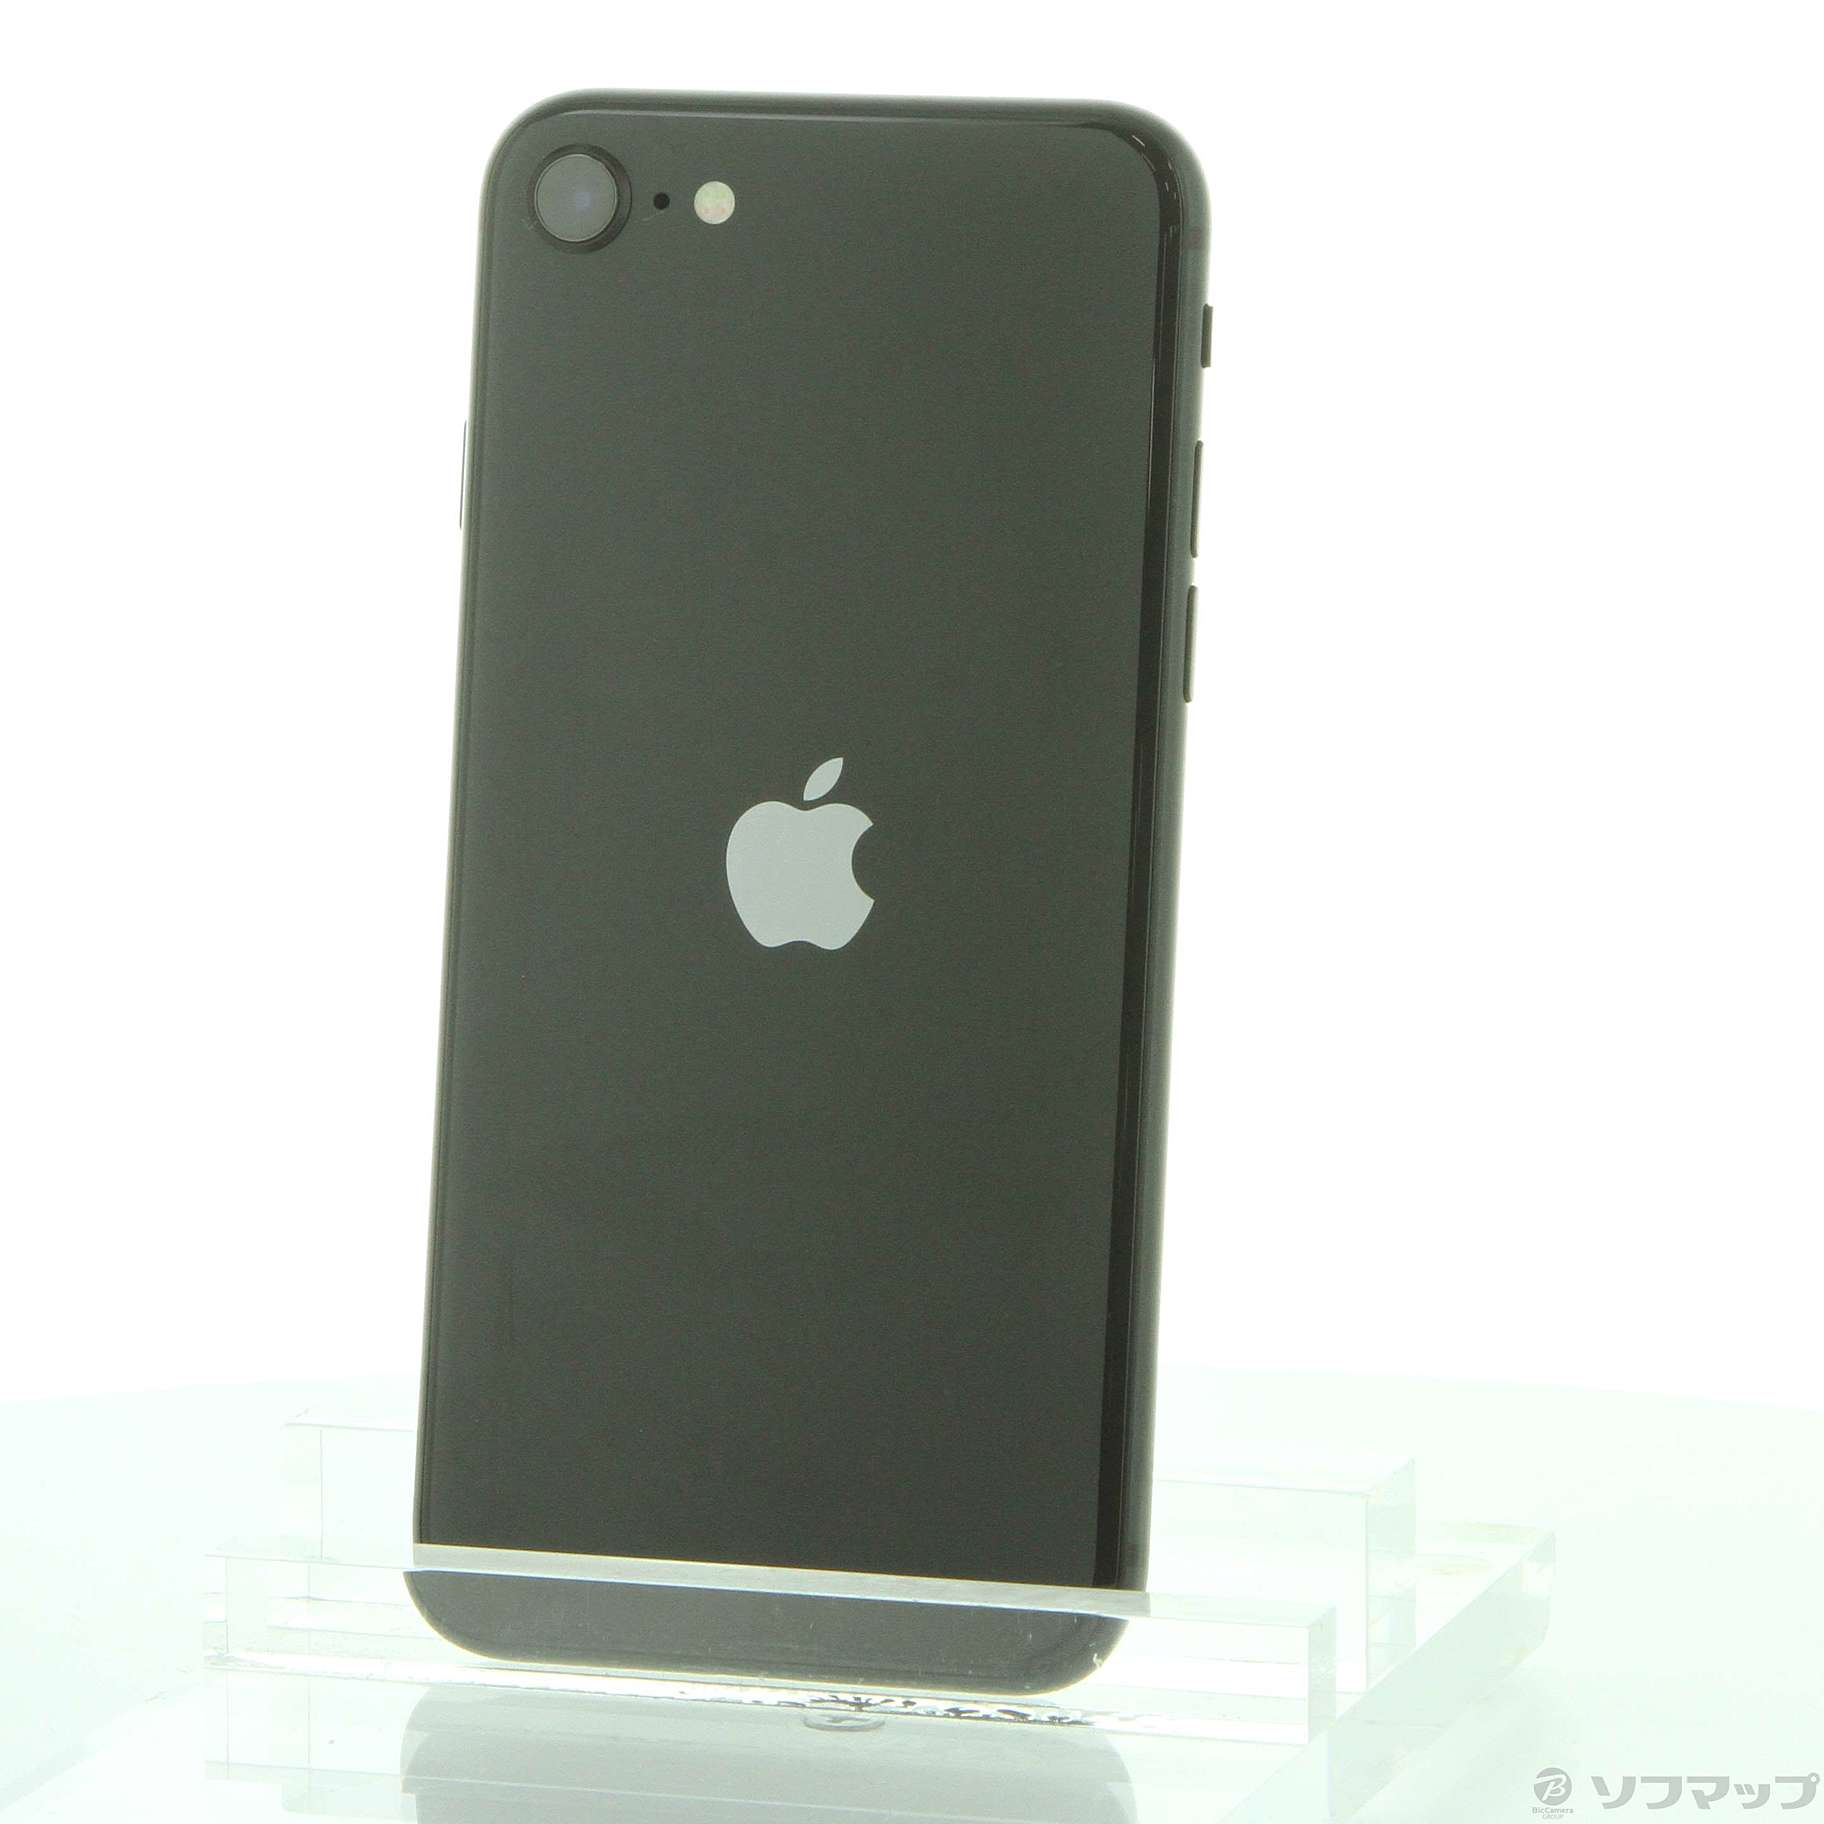 【在庫あ】Apple iPhoneSE 第2世代 64GB MX9R2J/A ブラック SIMフリー 中古 iPhone